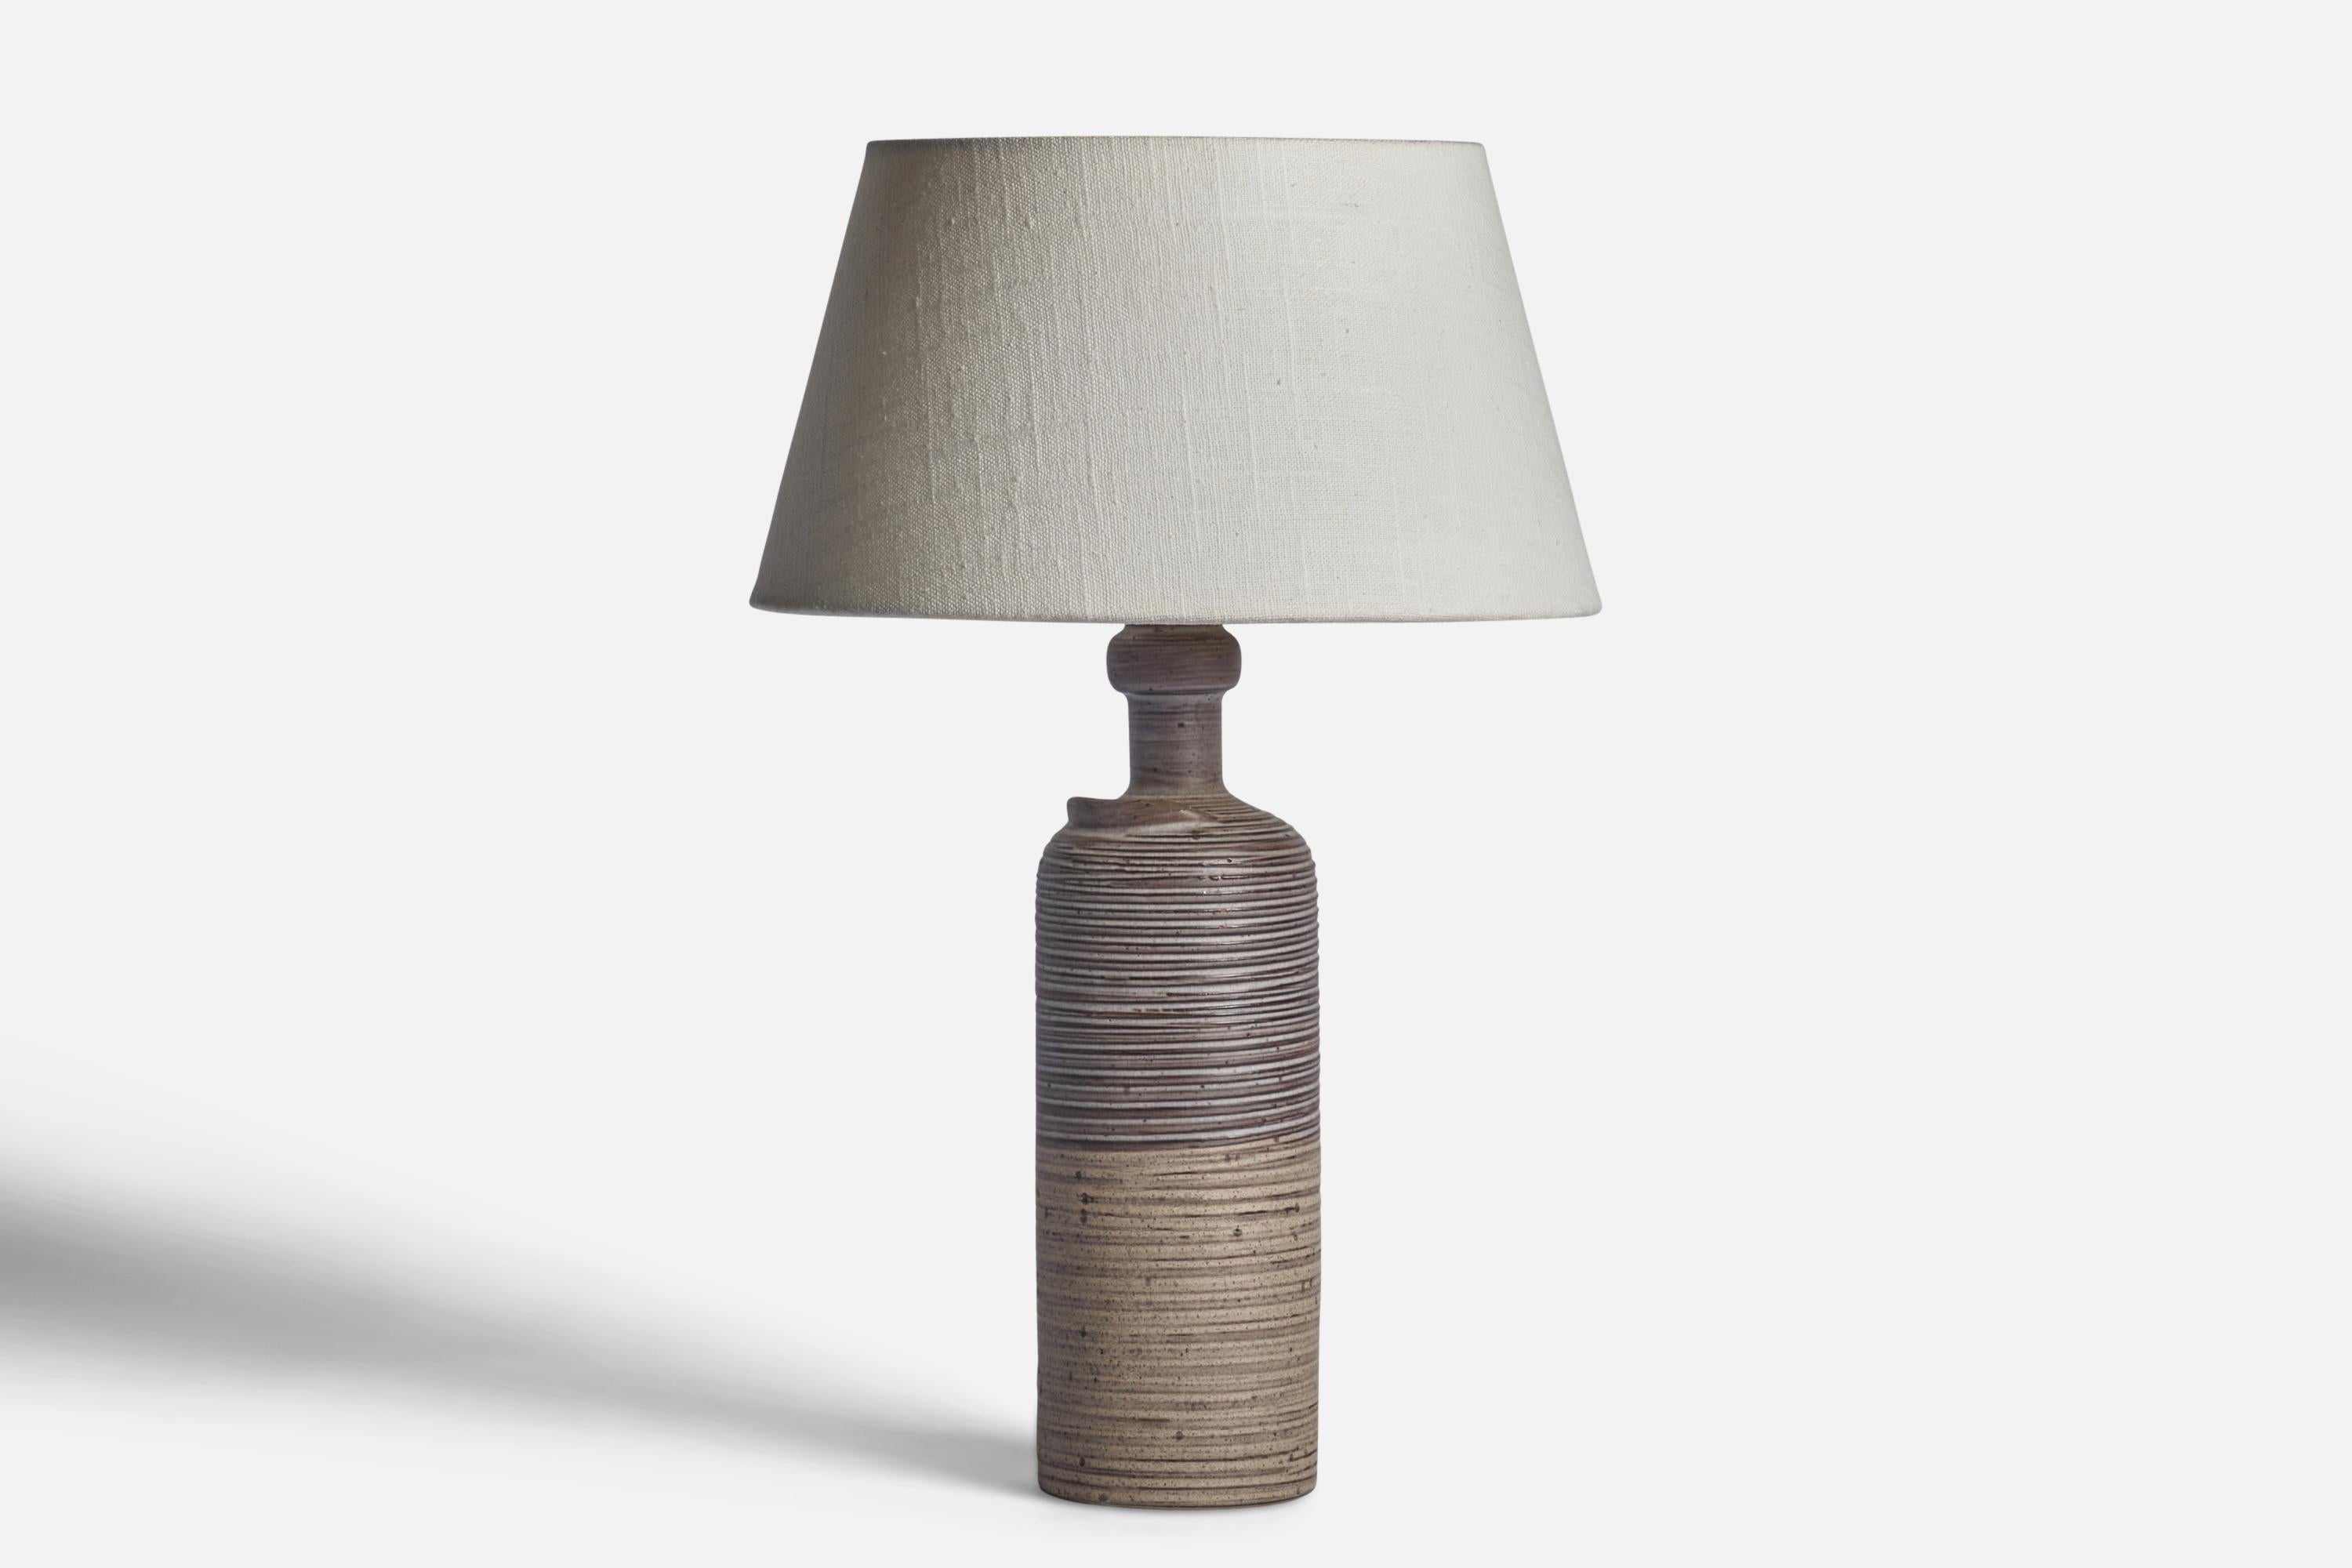 Lampe de table en céramique incisée, émaillée en gris, conçue par Thomas Hellström et produite par Nittsjö, Suède, c. années 1970.

Dimensions de la lampe (pouces) : 12.75